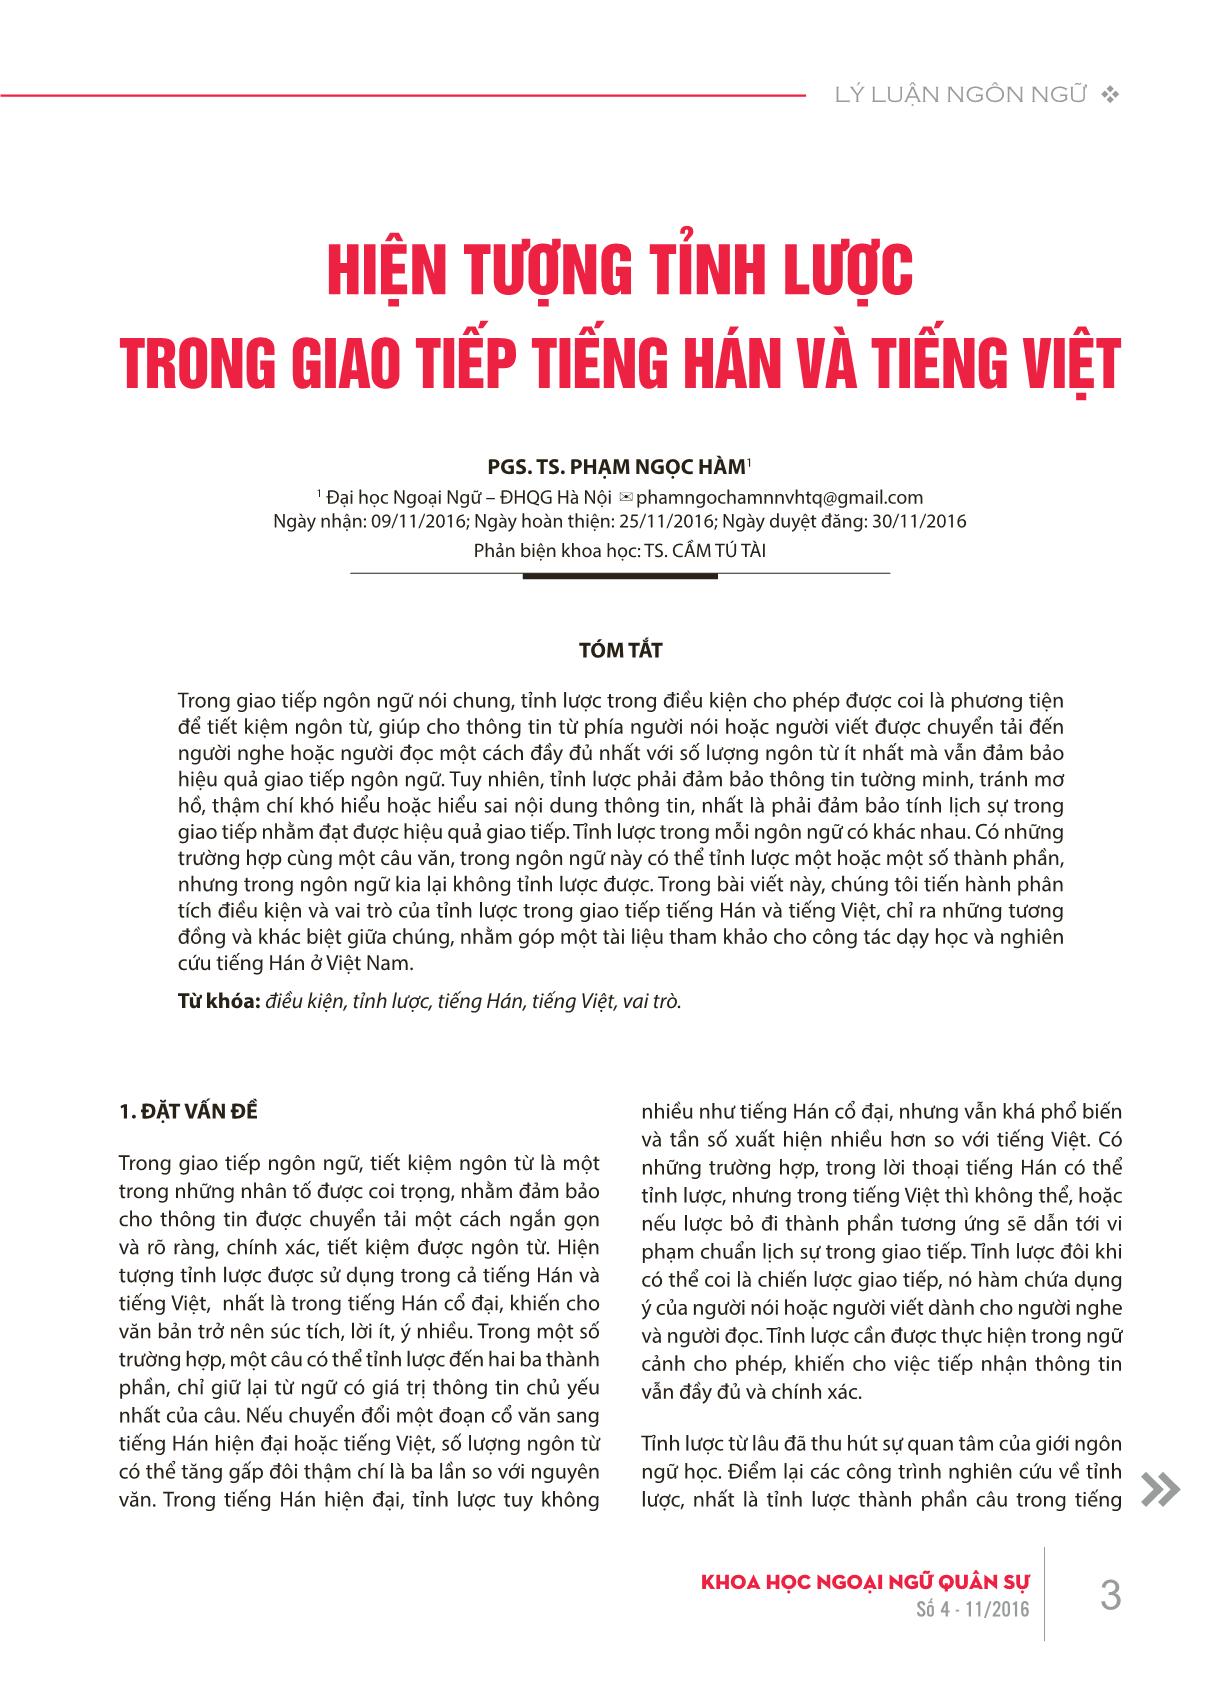 Hiện tượng tỉnh lược trong giao tiếp tiếng Hán và tiếng Việt trang 1